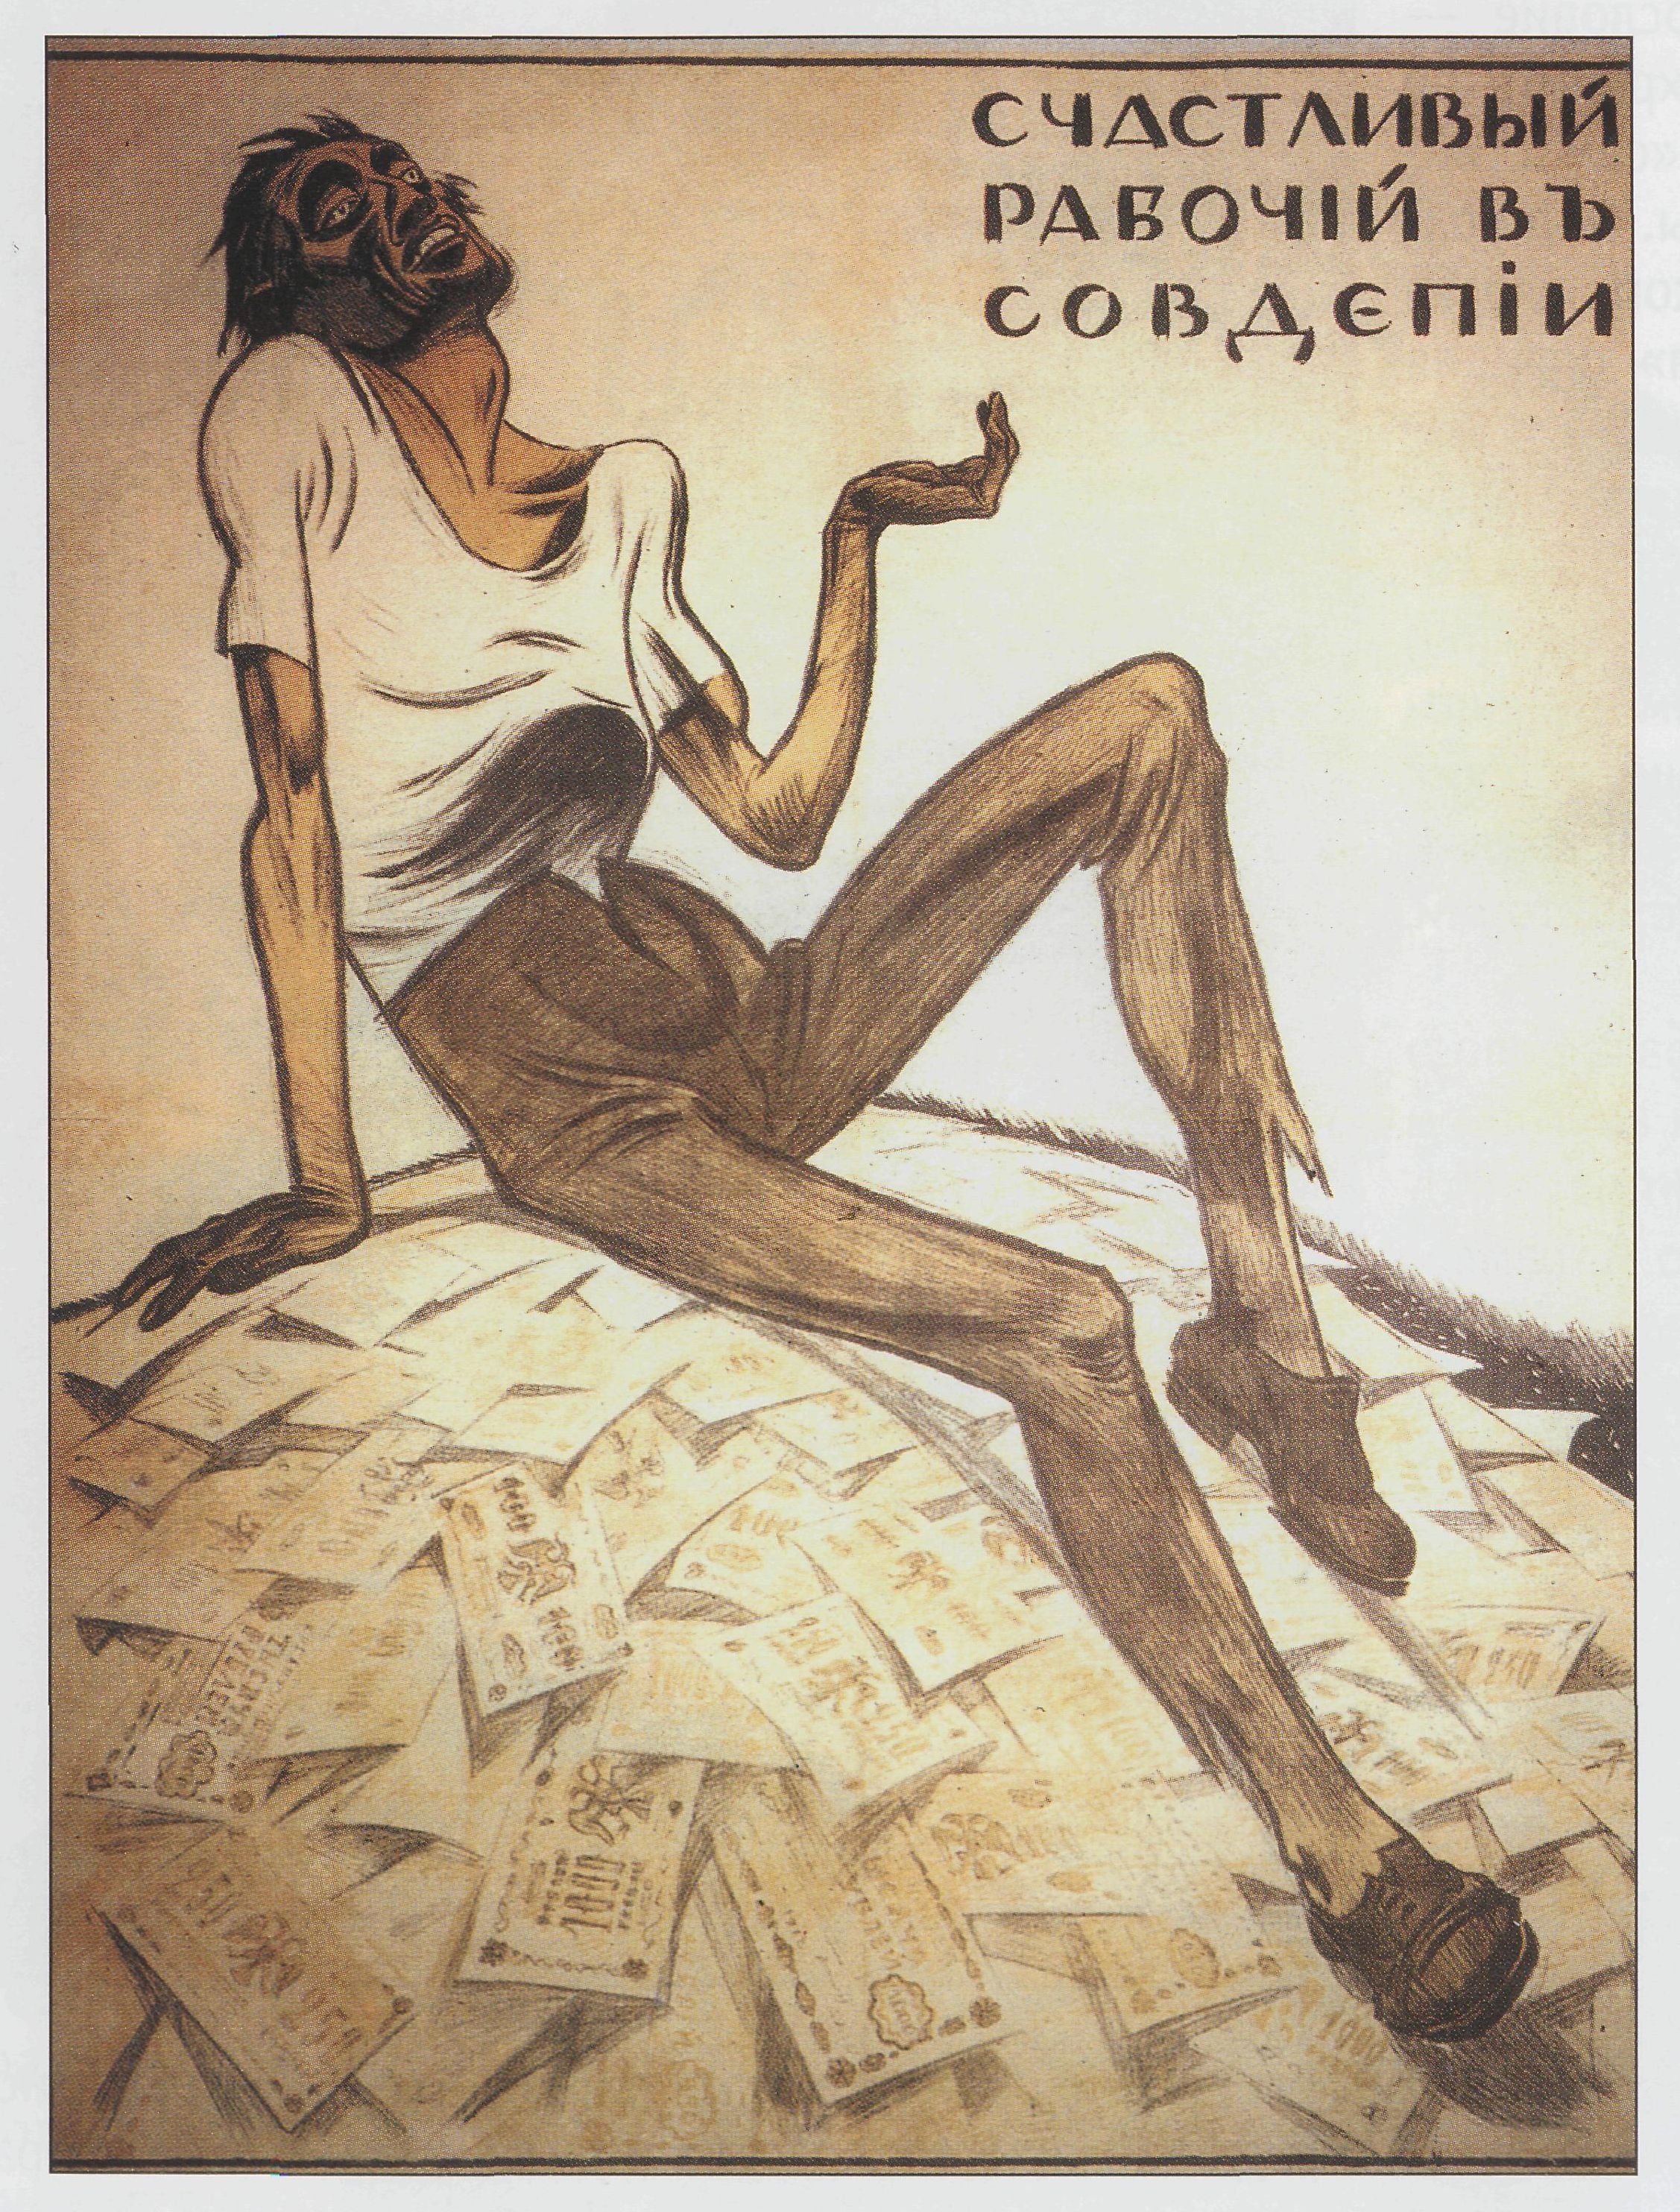 Рисунок иллюстрация к лозунгу 10. Советские плакаты. Советские плакаты современные. Счастливый рабочий в совдепии. Совдепия плакат.